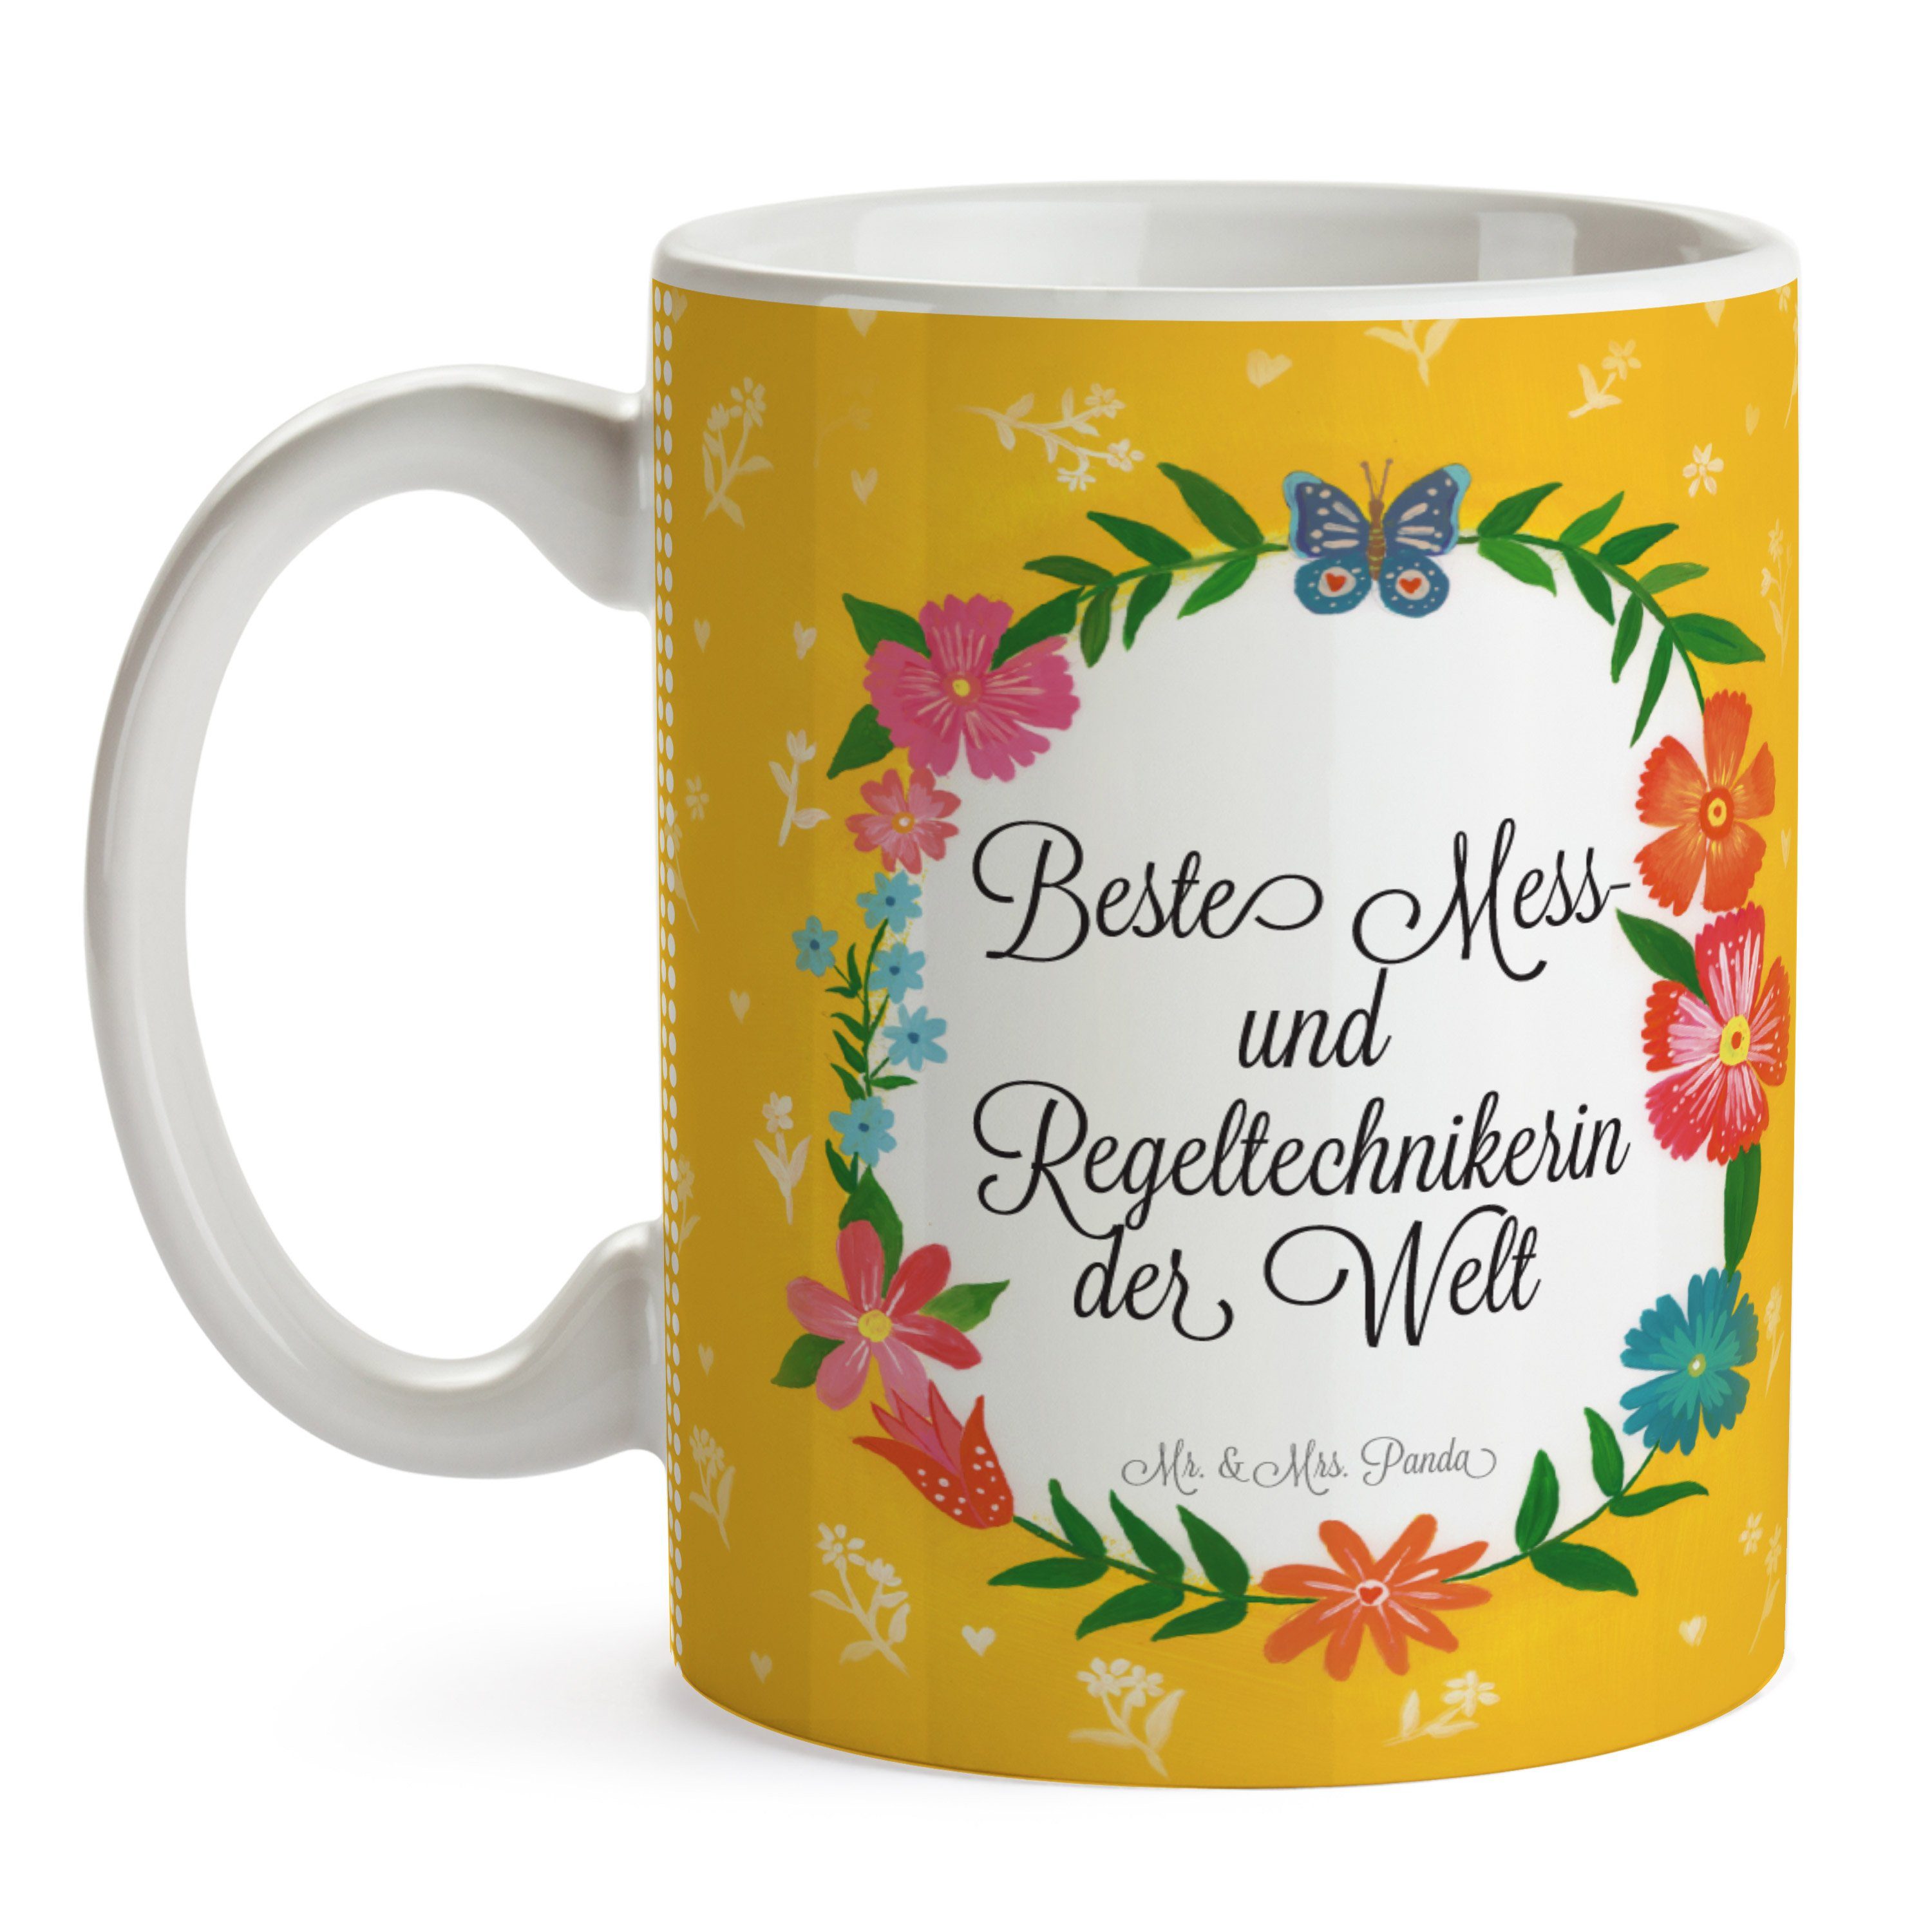 Mr. & Mrs. Panda Becher, Mess- Kaffeebecher, und - Bachelor, Keramik Regeltechnikerin Tasse Geschenk